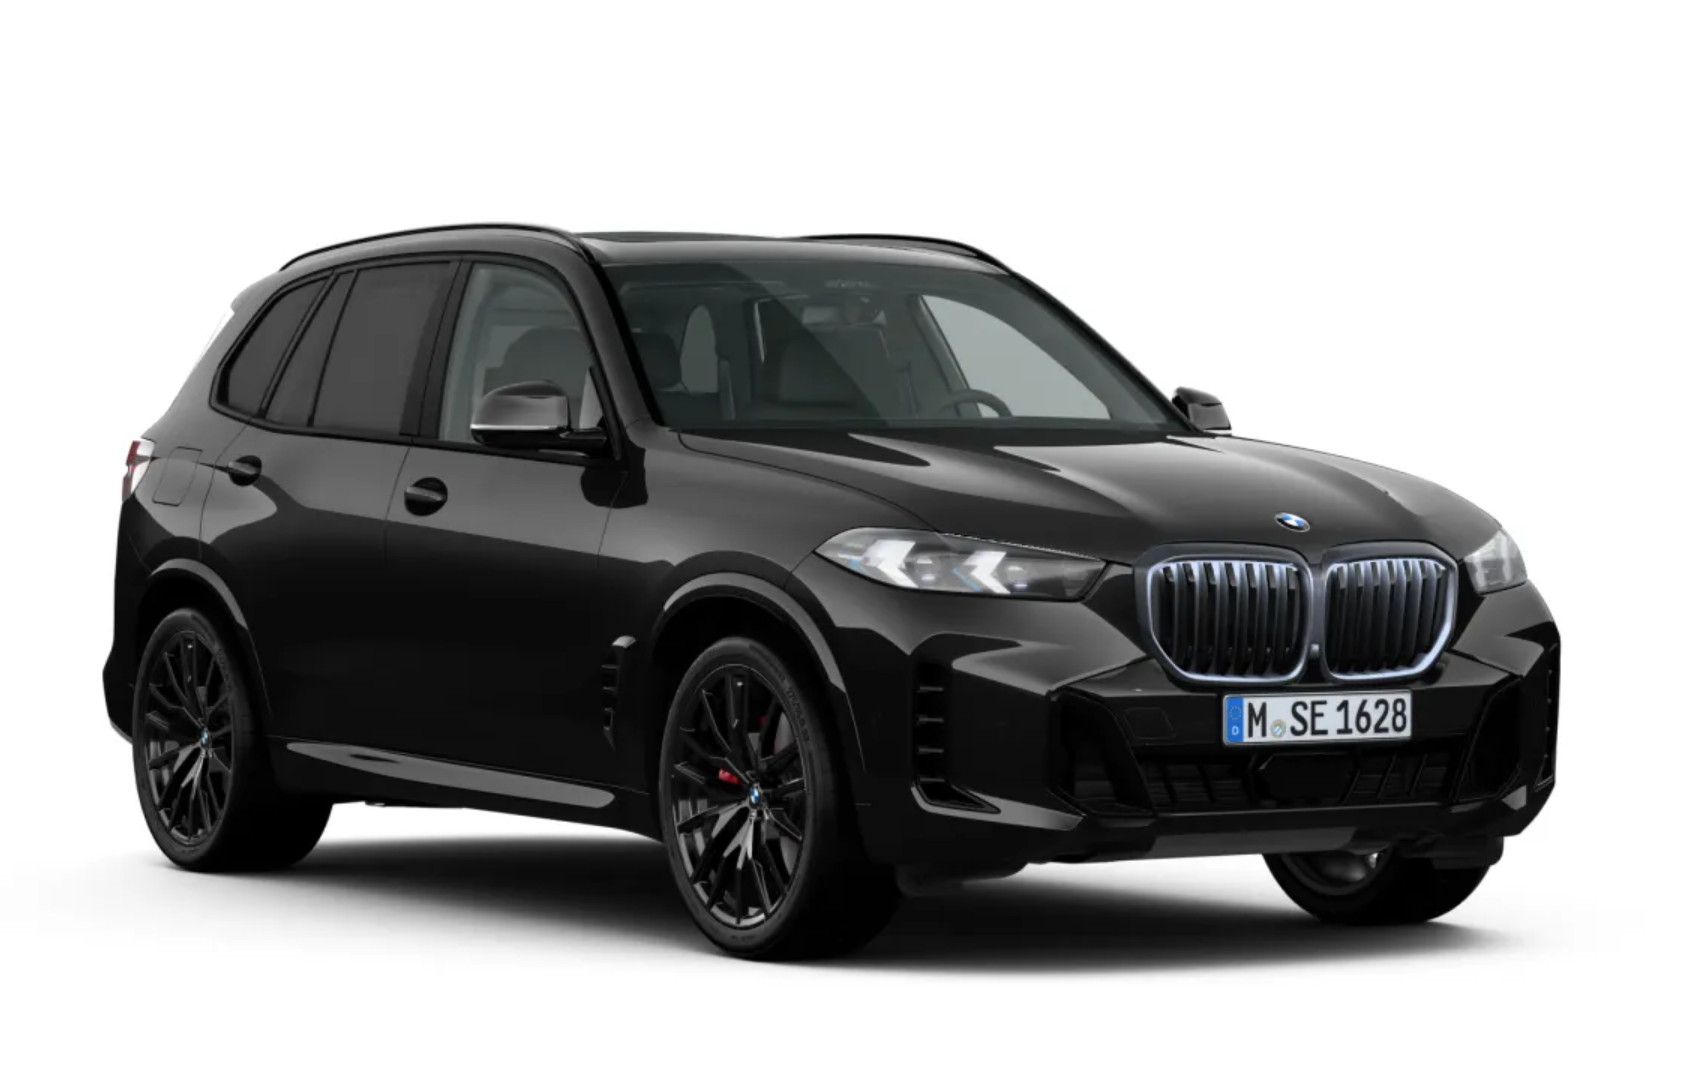 BMW X5 40d xDrive Msport | nové auto objednané do výroby | FACELIFT | sportovně luxusní naftové SUV | maximální výbava | skvělá cena | předání do 4-6 měsíců | objednání online | auto eshop AUTOiBUY.com